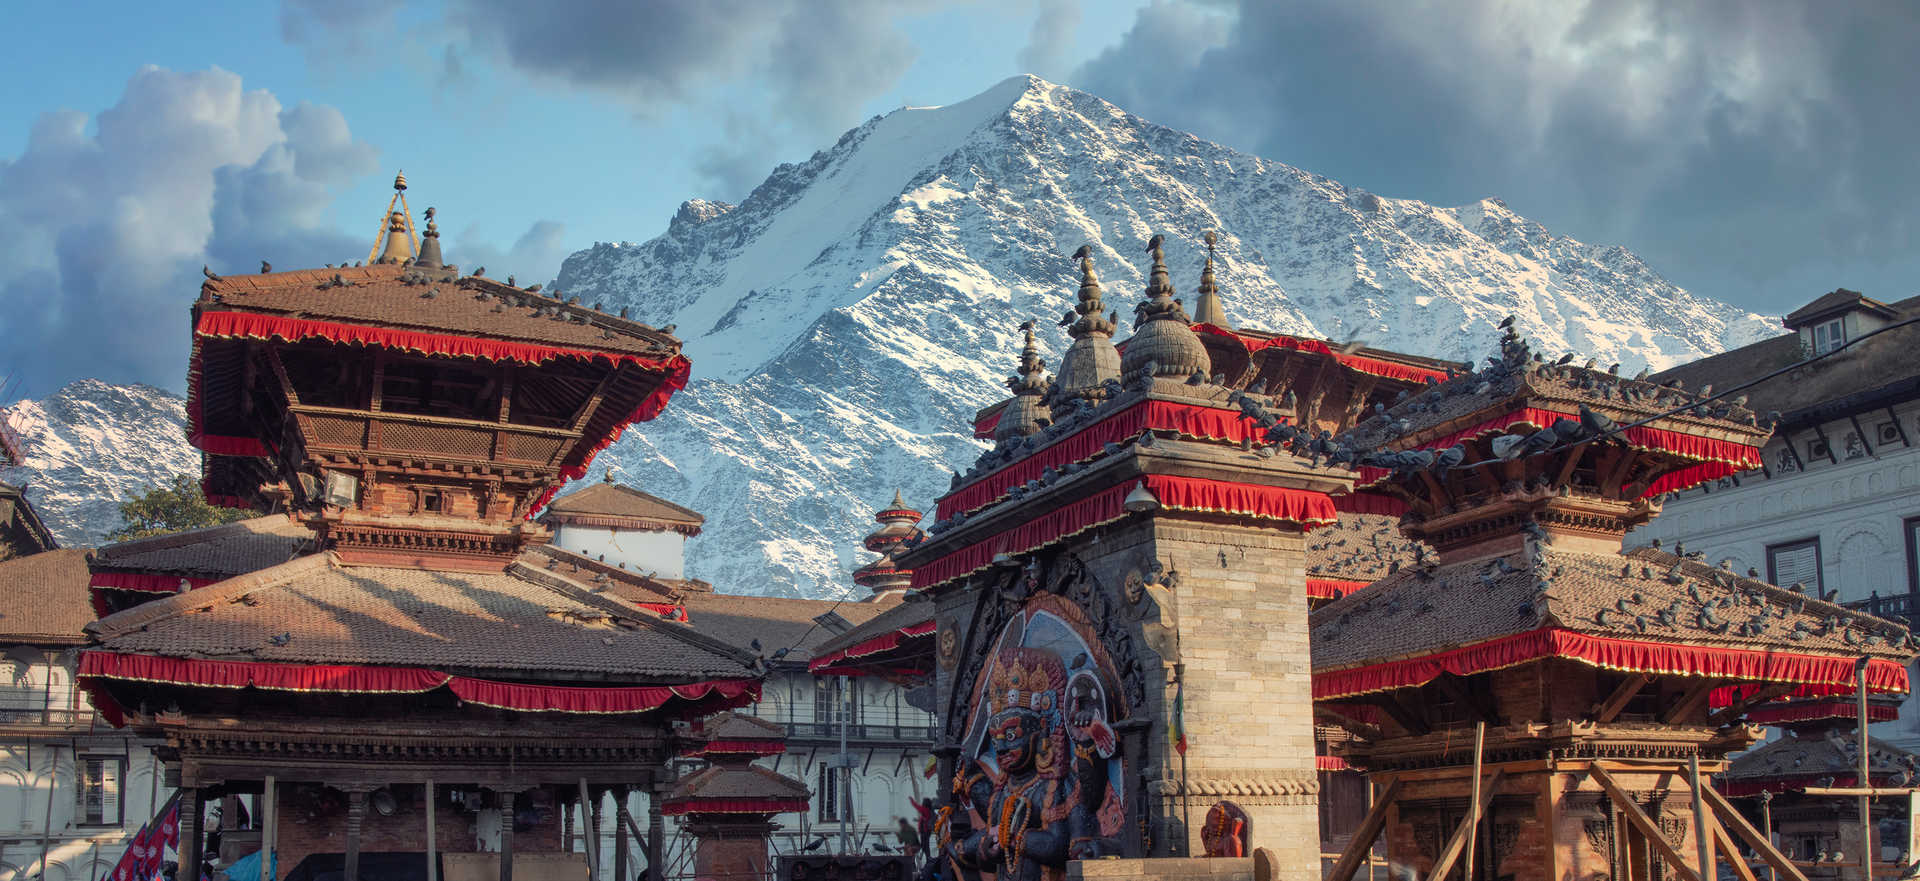 Patan ancienne ville de la vallée de Katmandou au Népal